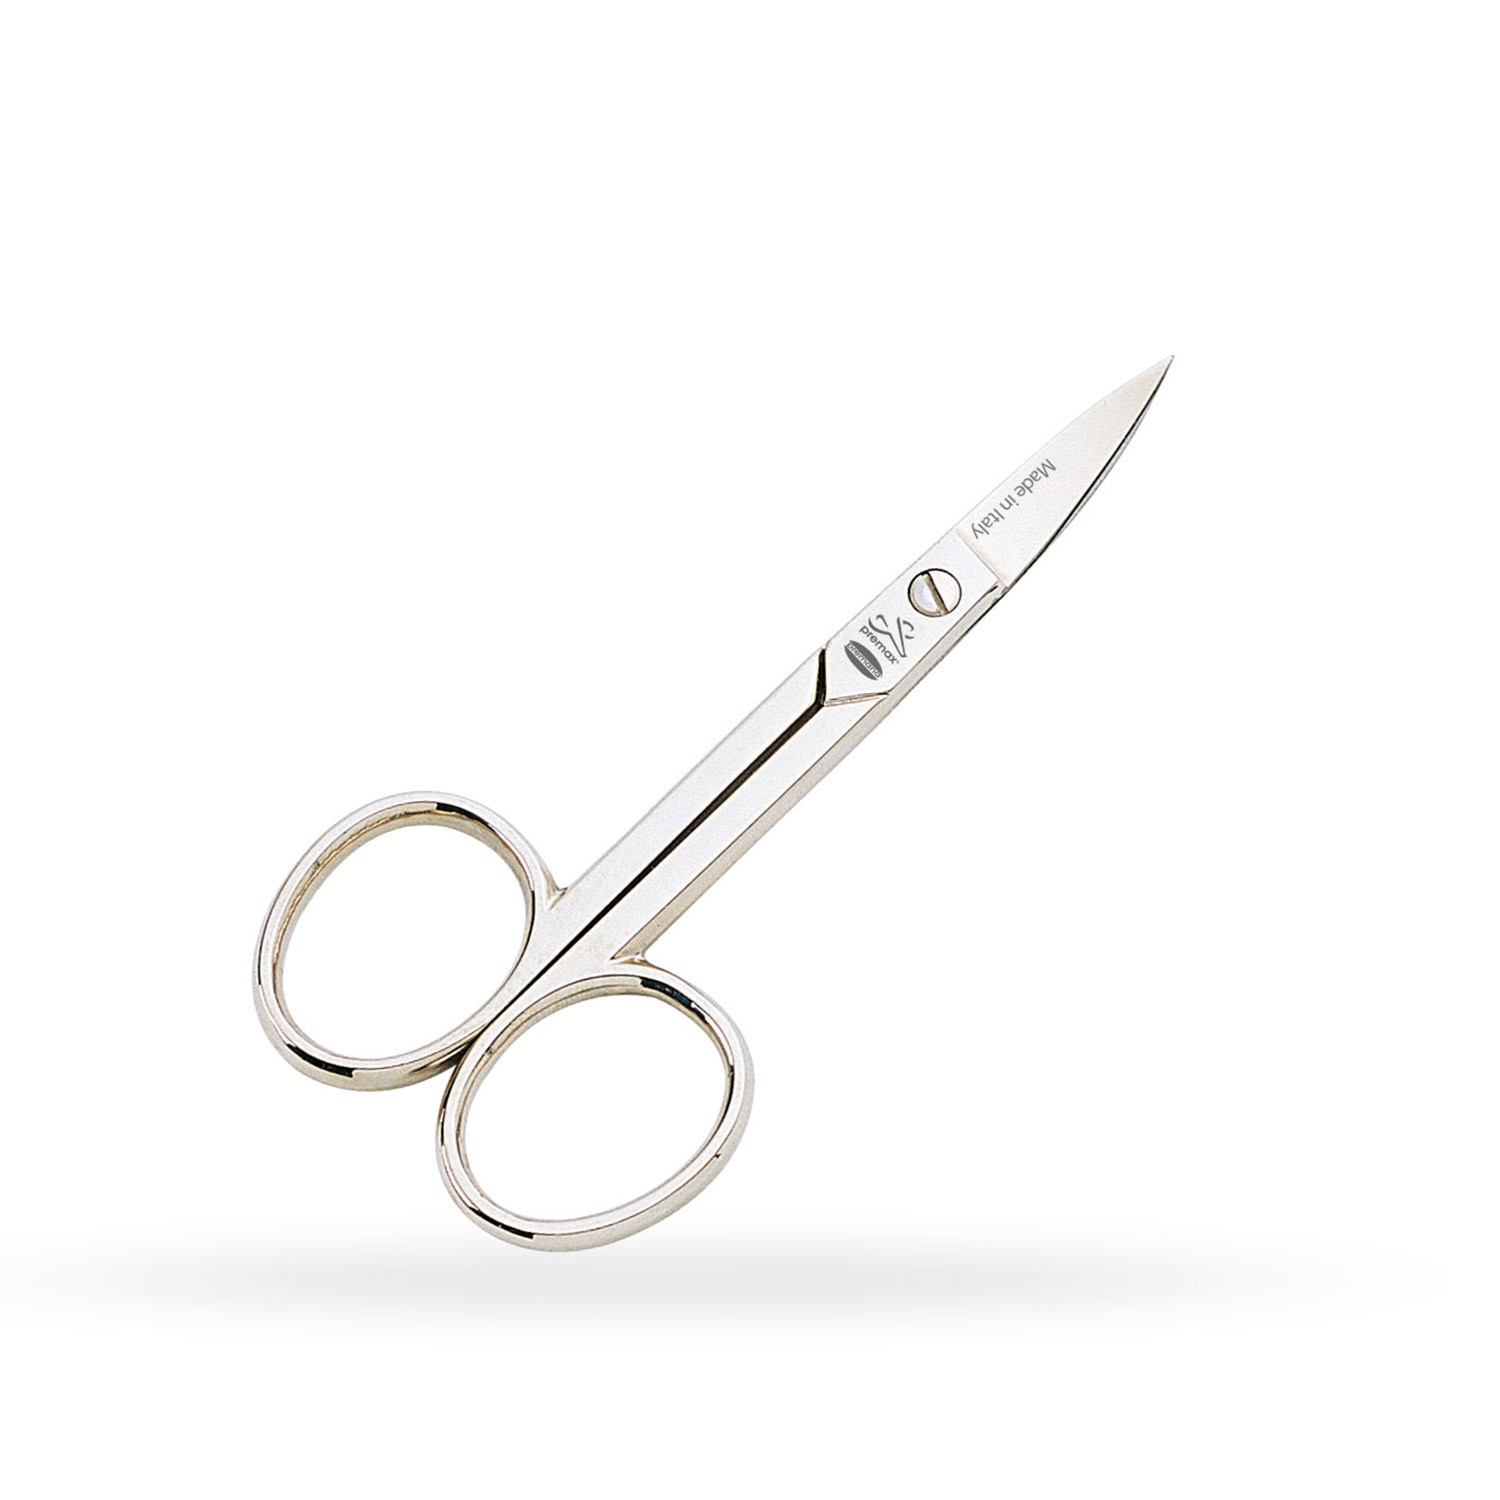 Premax Nail Scissors 3-1 / 2 "Straight Tip